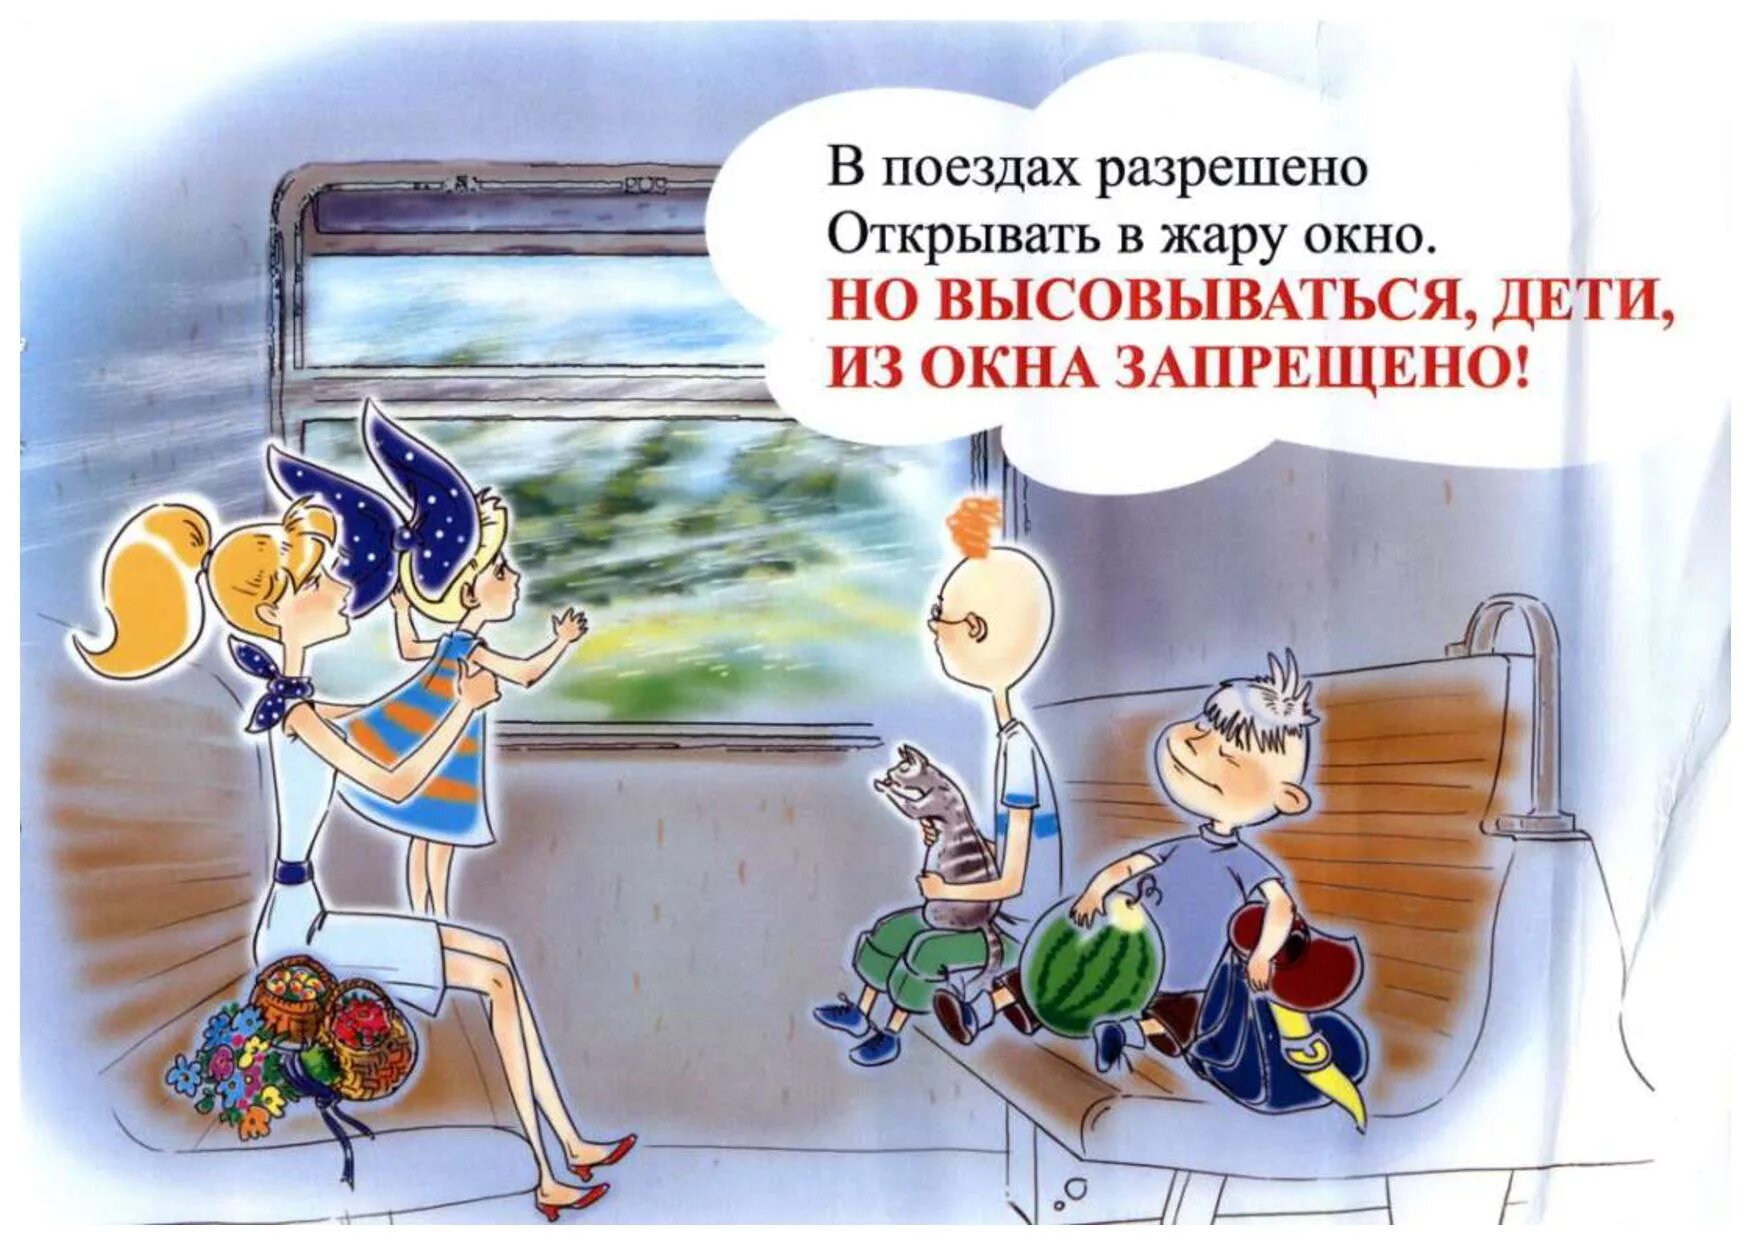 Детям в поезде запрещается. Правила поведения на железной дороге. Безопасное поведение в поезде. Правила безопасности в поезде для детей. Правила поведения в поезде для детей.